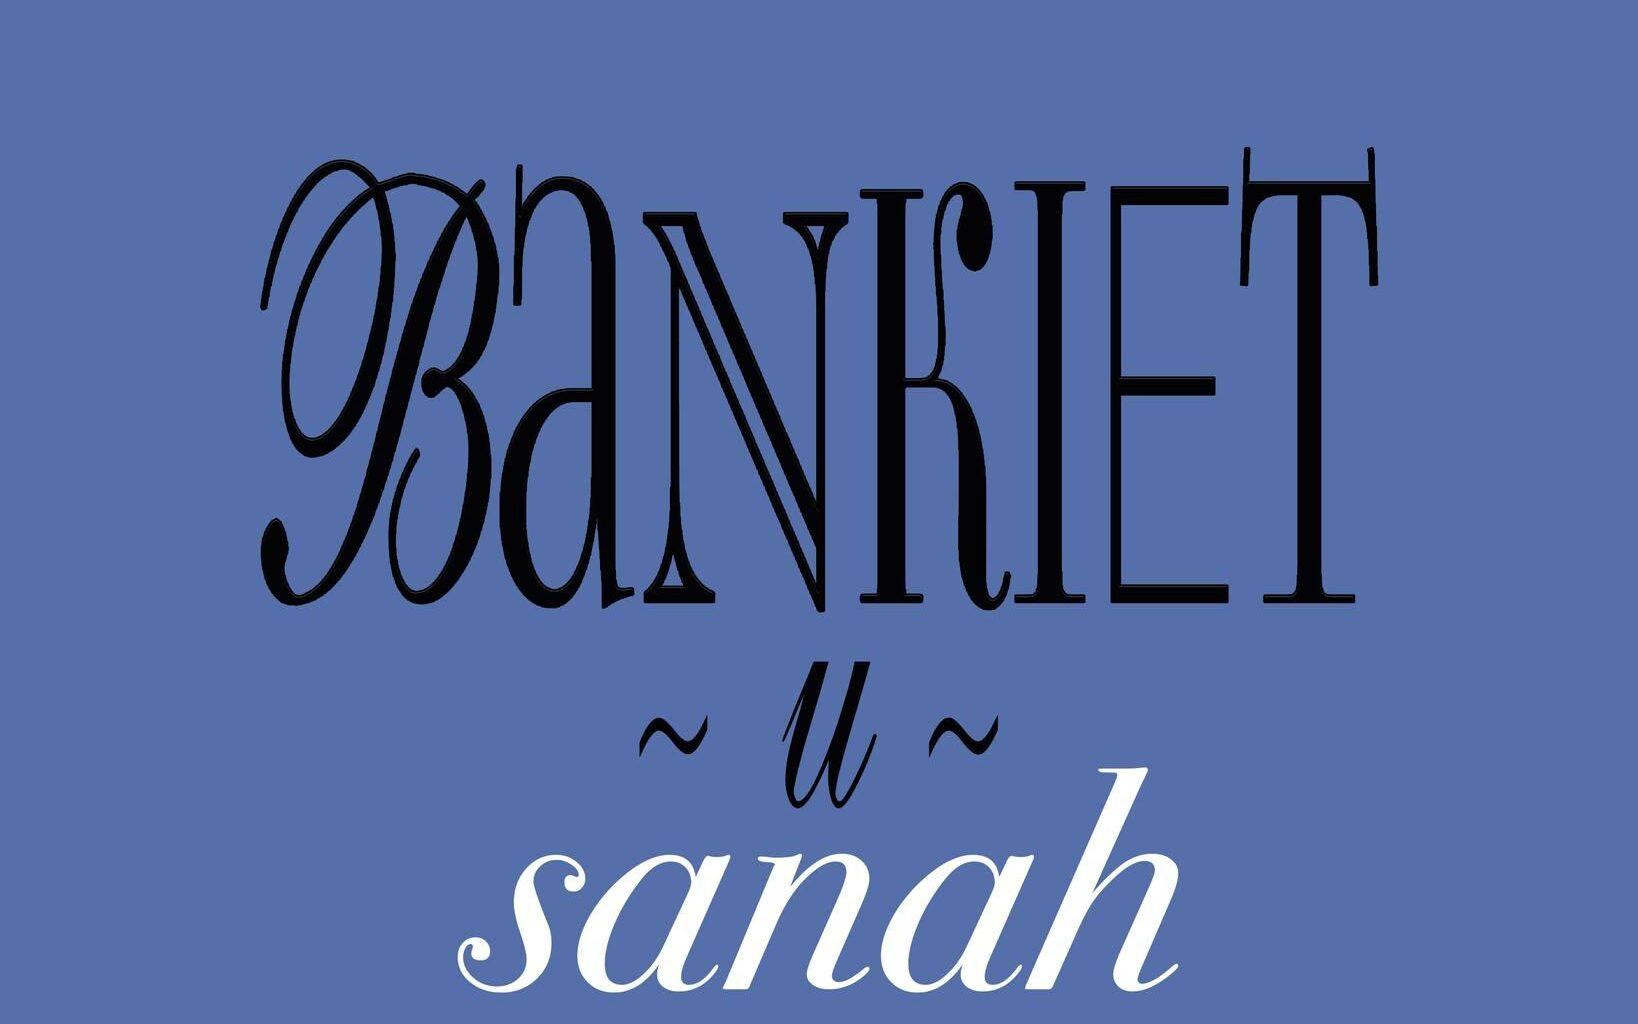 ''Bankiet Tour'' - ruszyła sprzedaż biletów na trasę koncertową Sanah